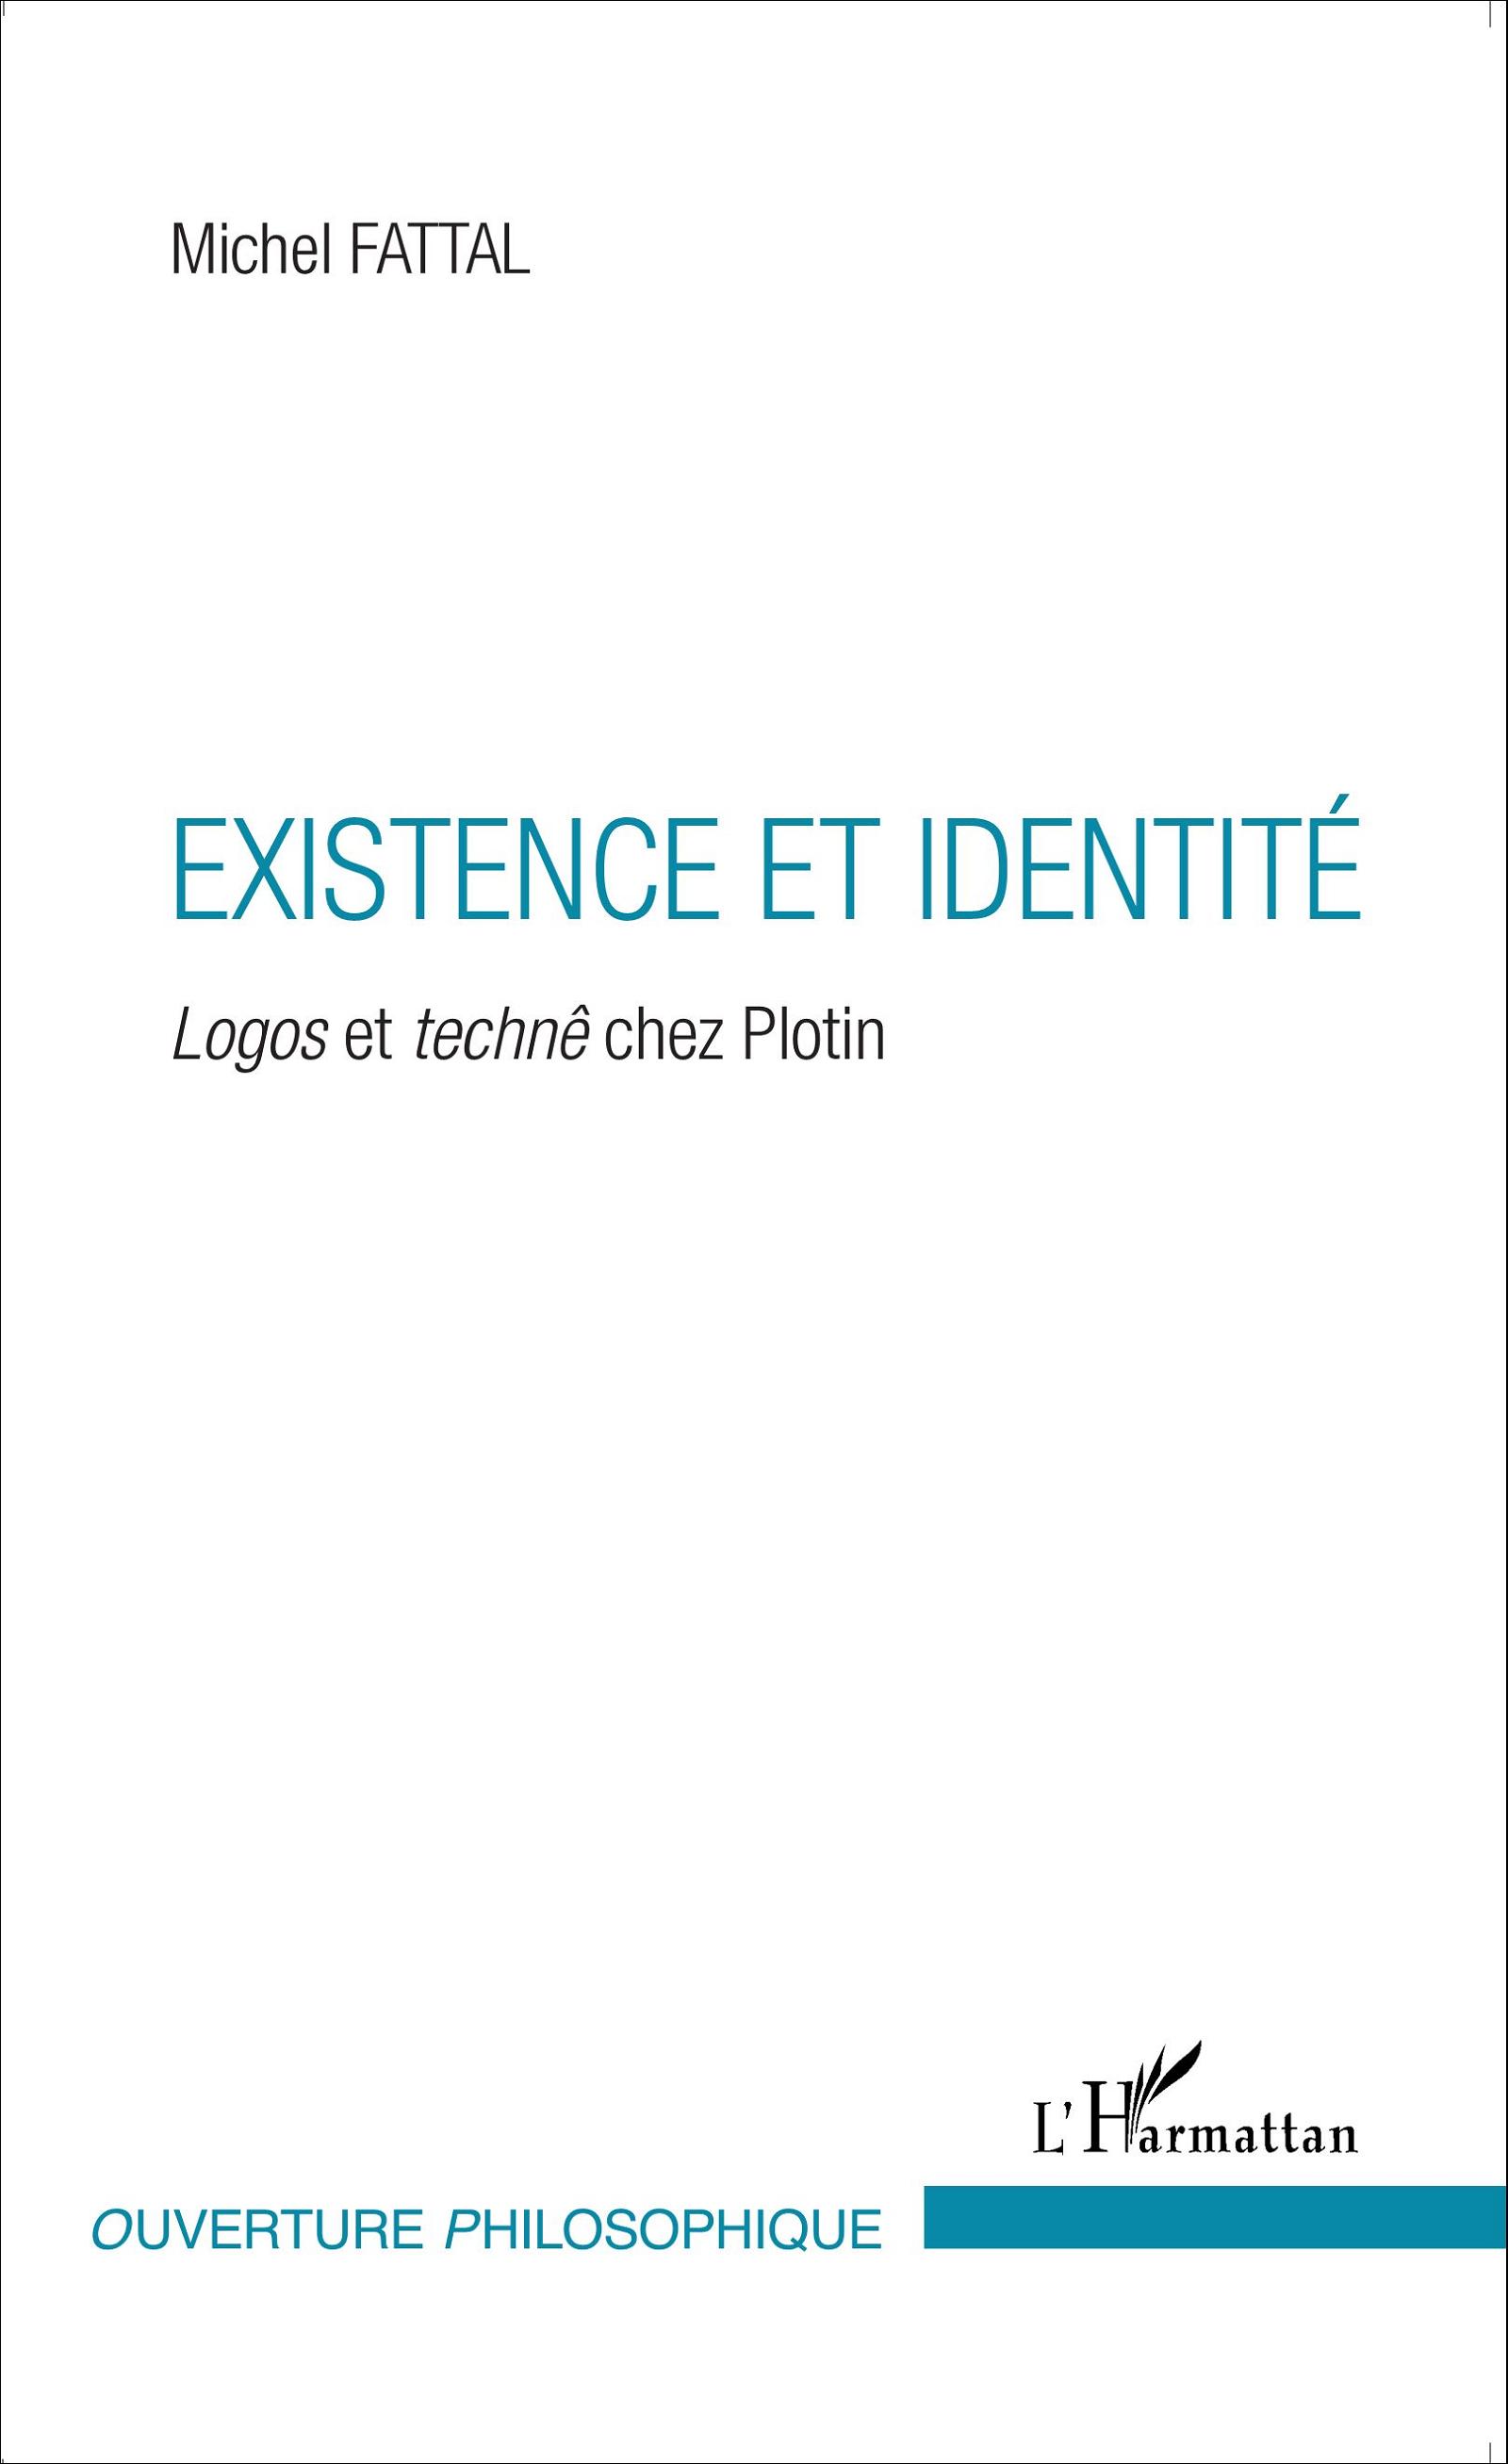 Existence et identité - Fattal, Michel